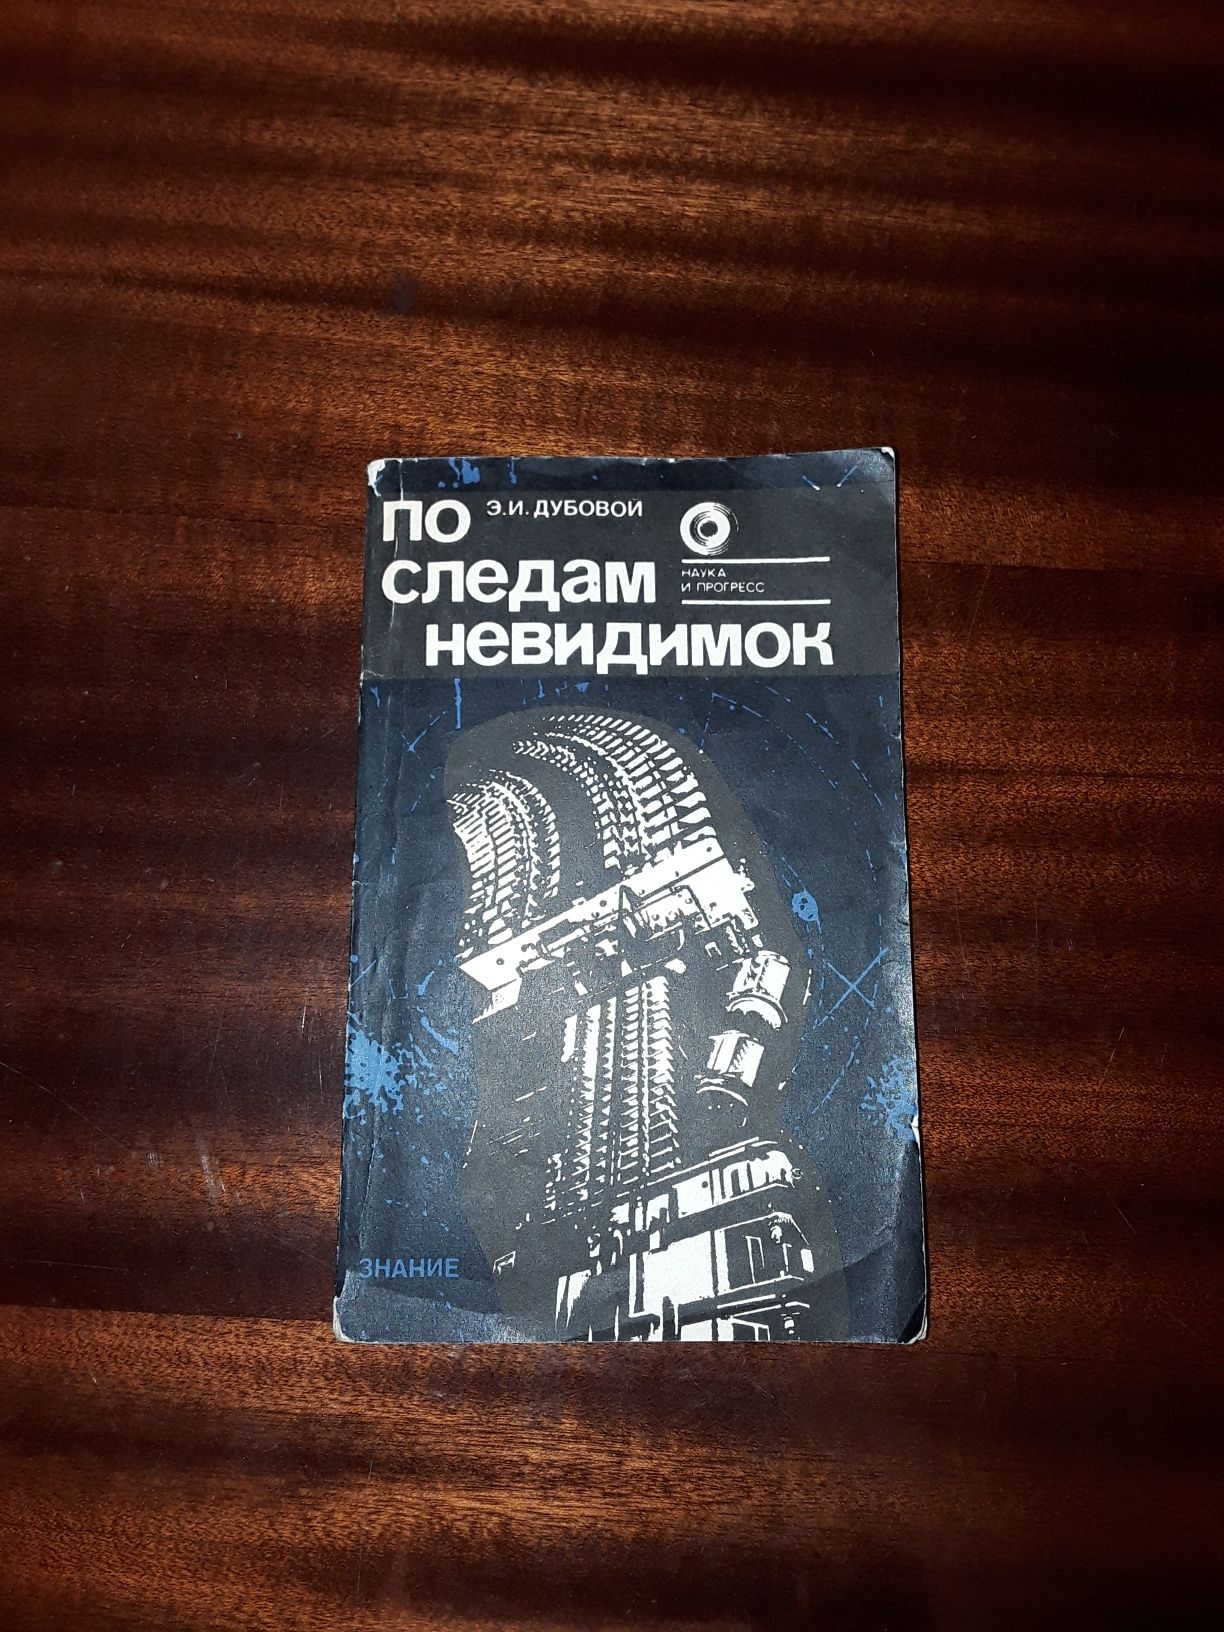 Книга " По следам невидимок " Э.И. Дубовой